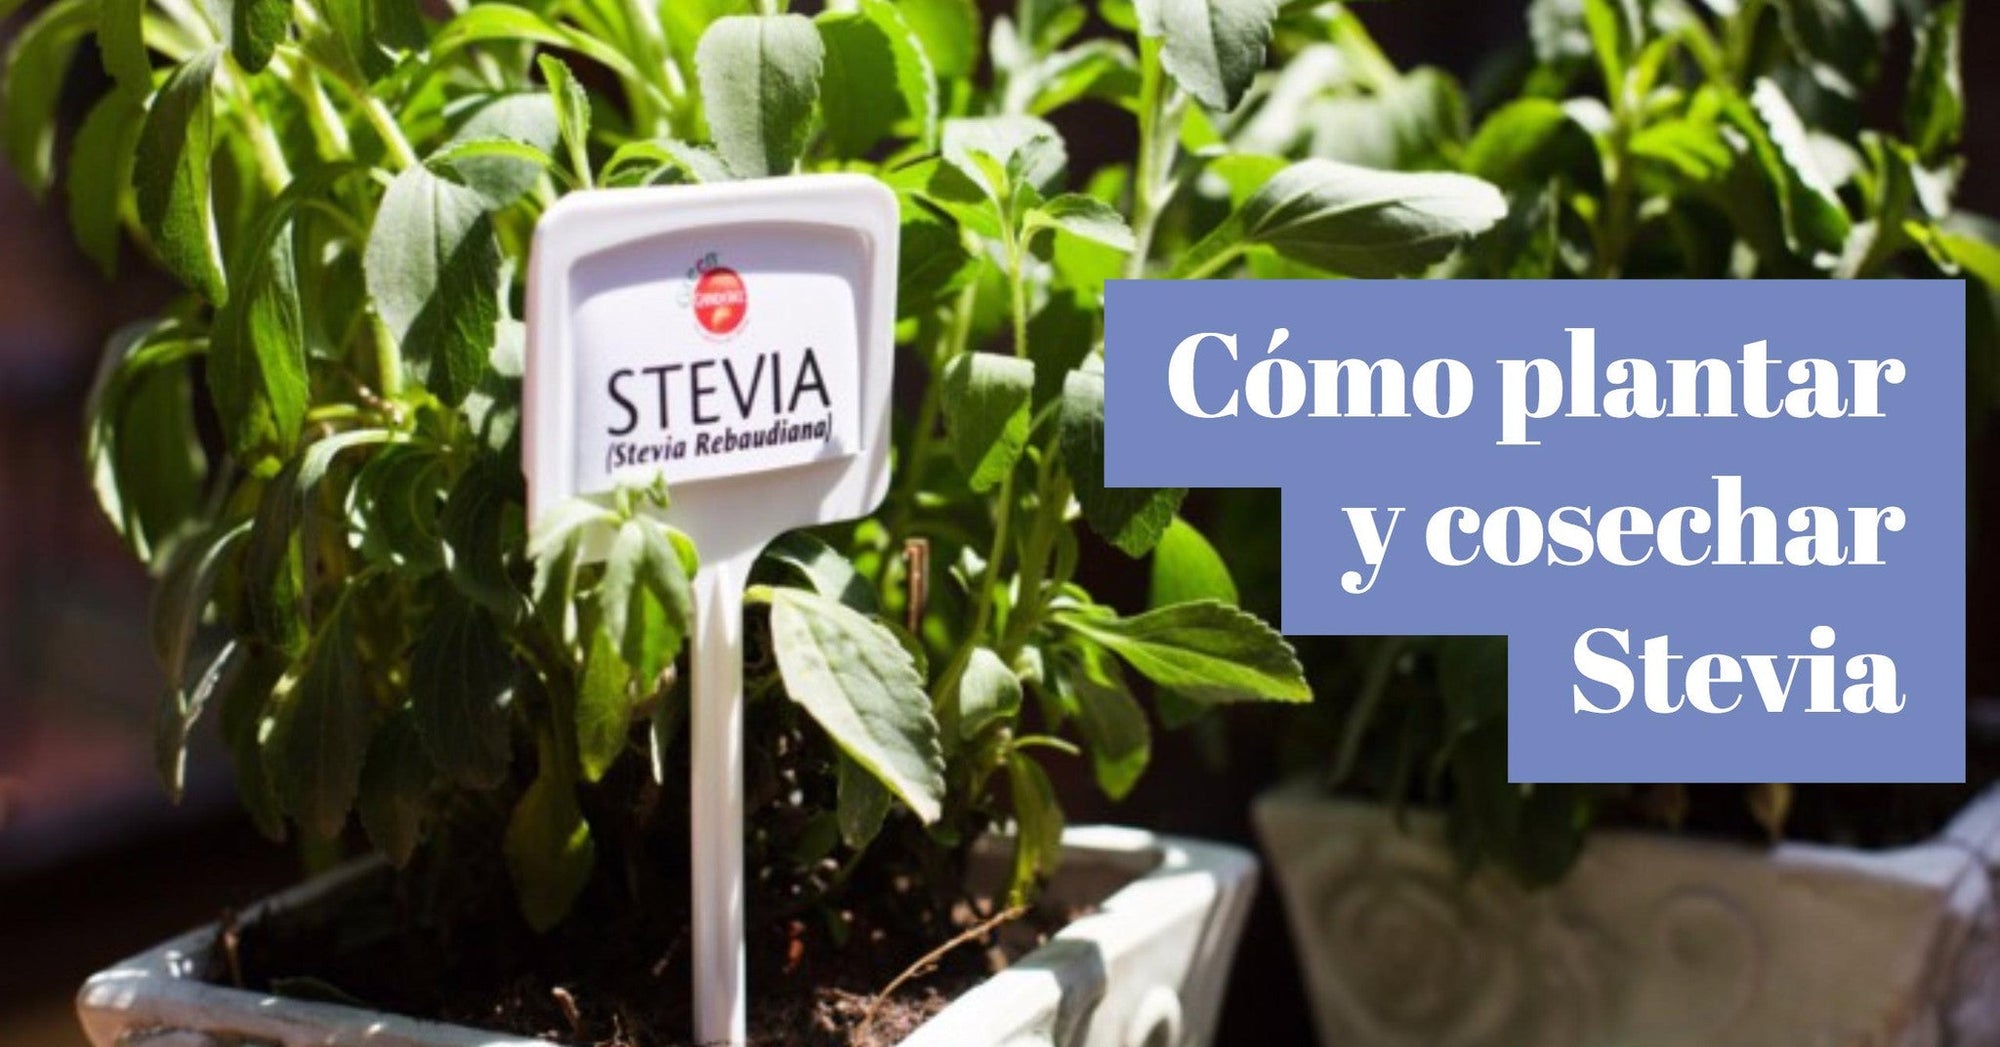 Cómo plantar y cultivar tu propia planta de stevia